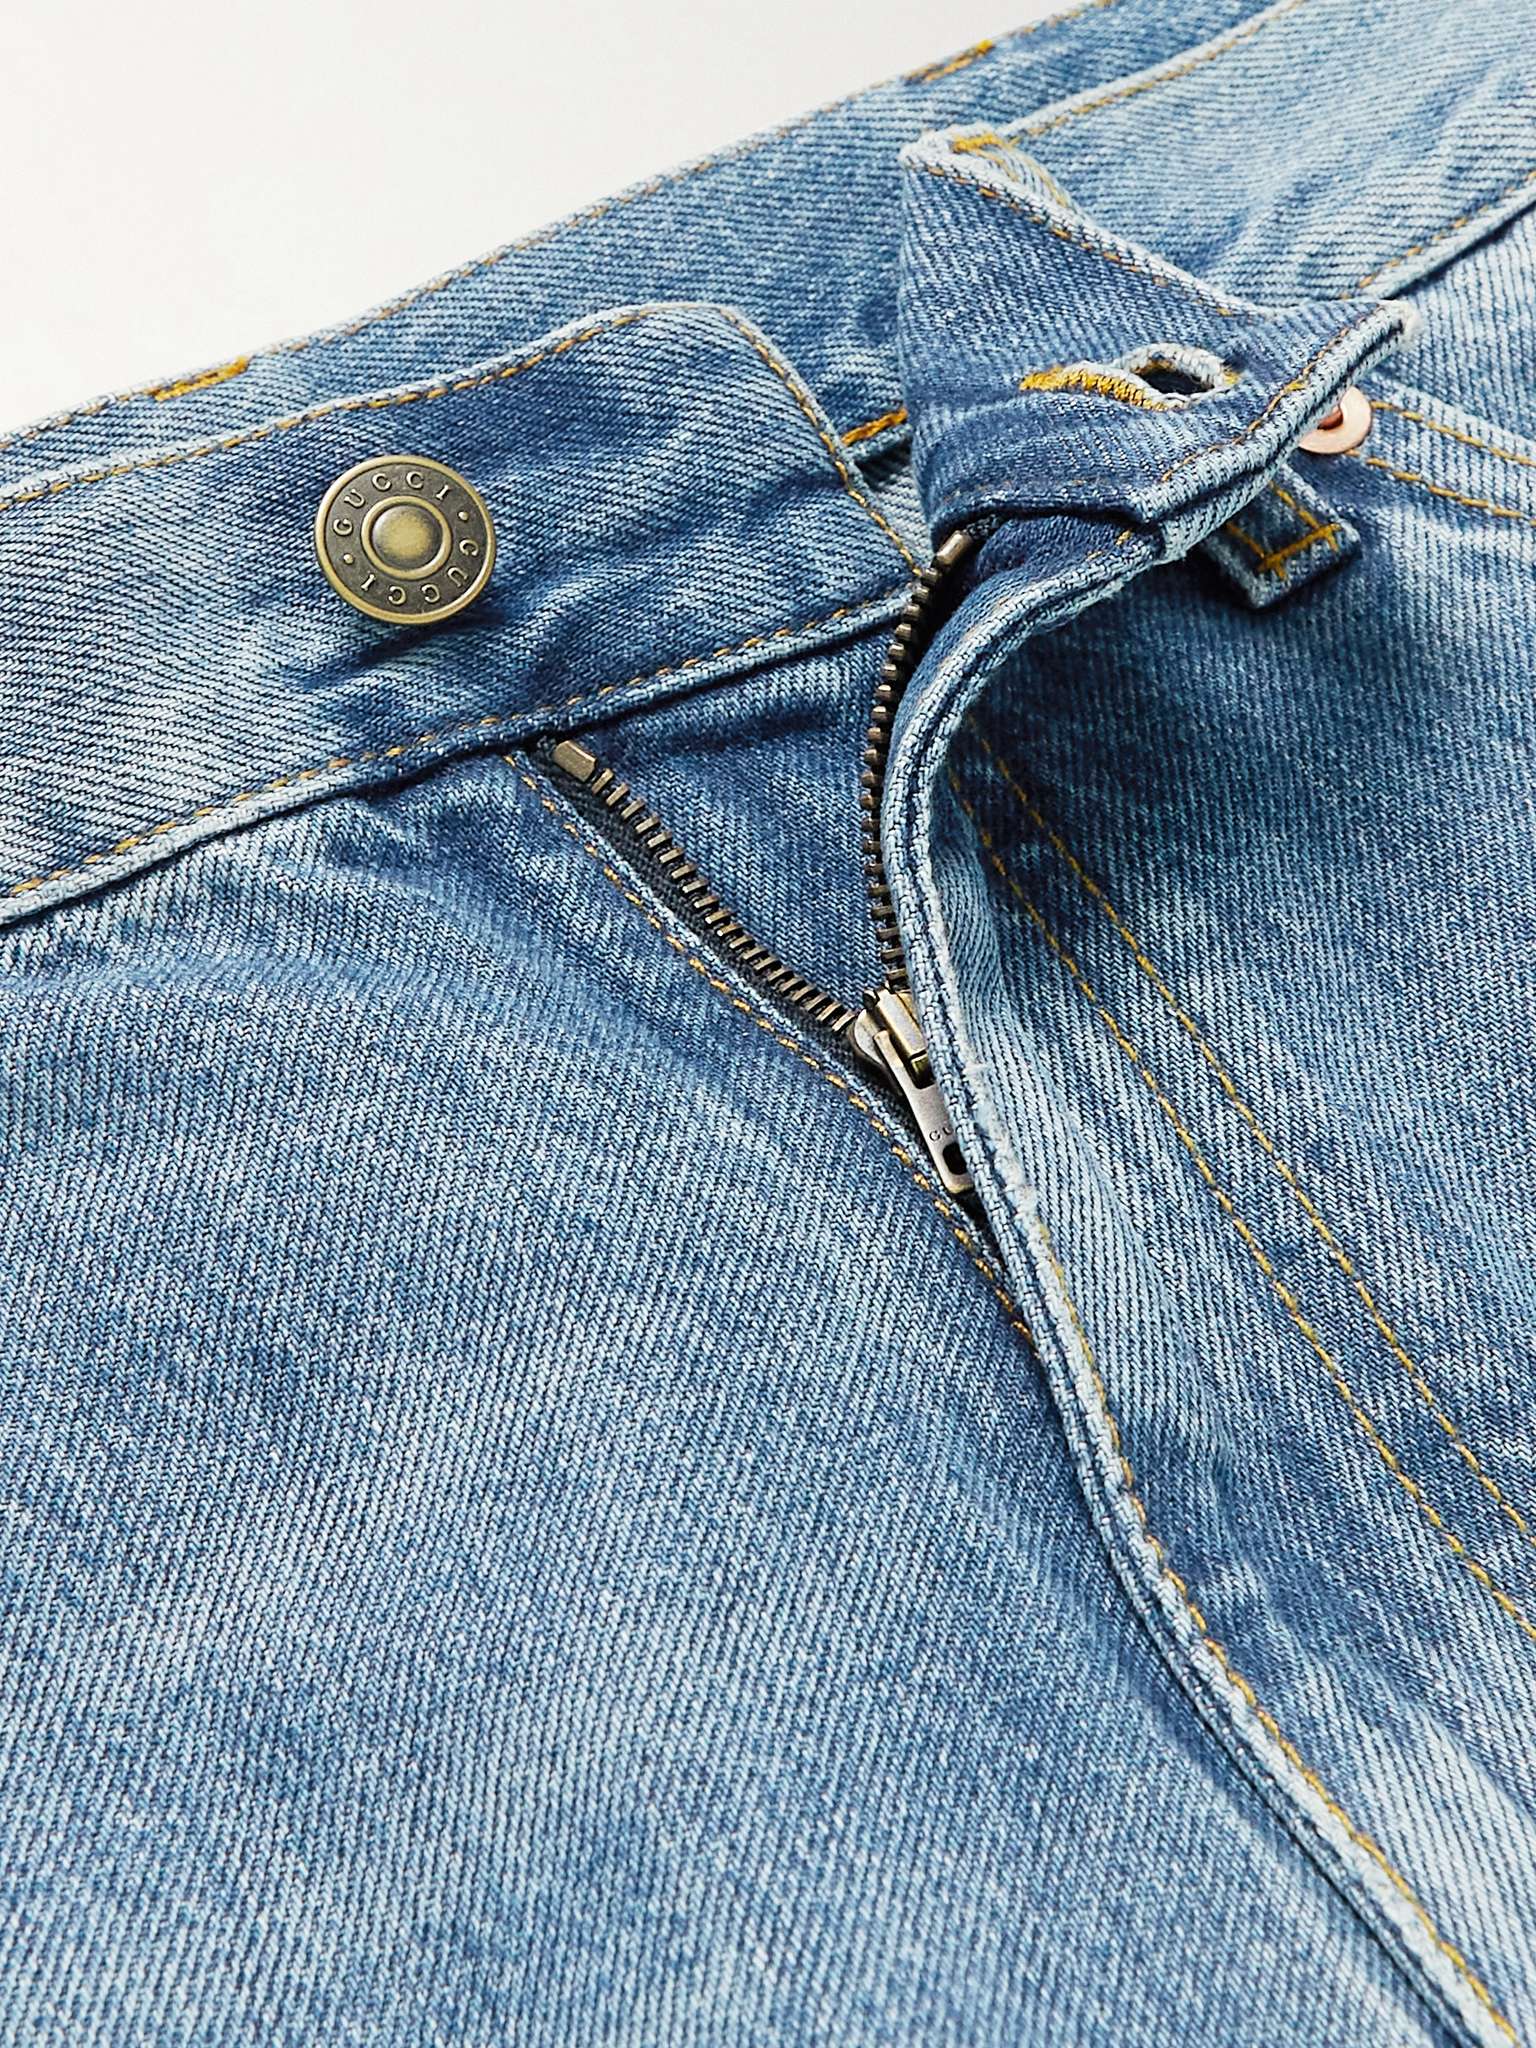 Blue Straight-Leg Horsebit-Detailed Jeans | GUCCI | MR PORTER